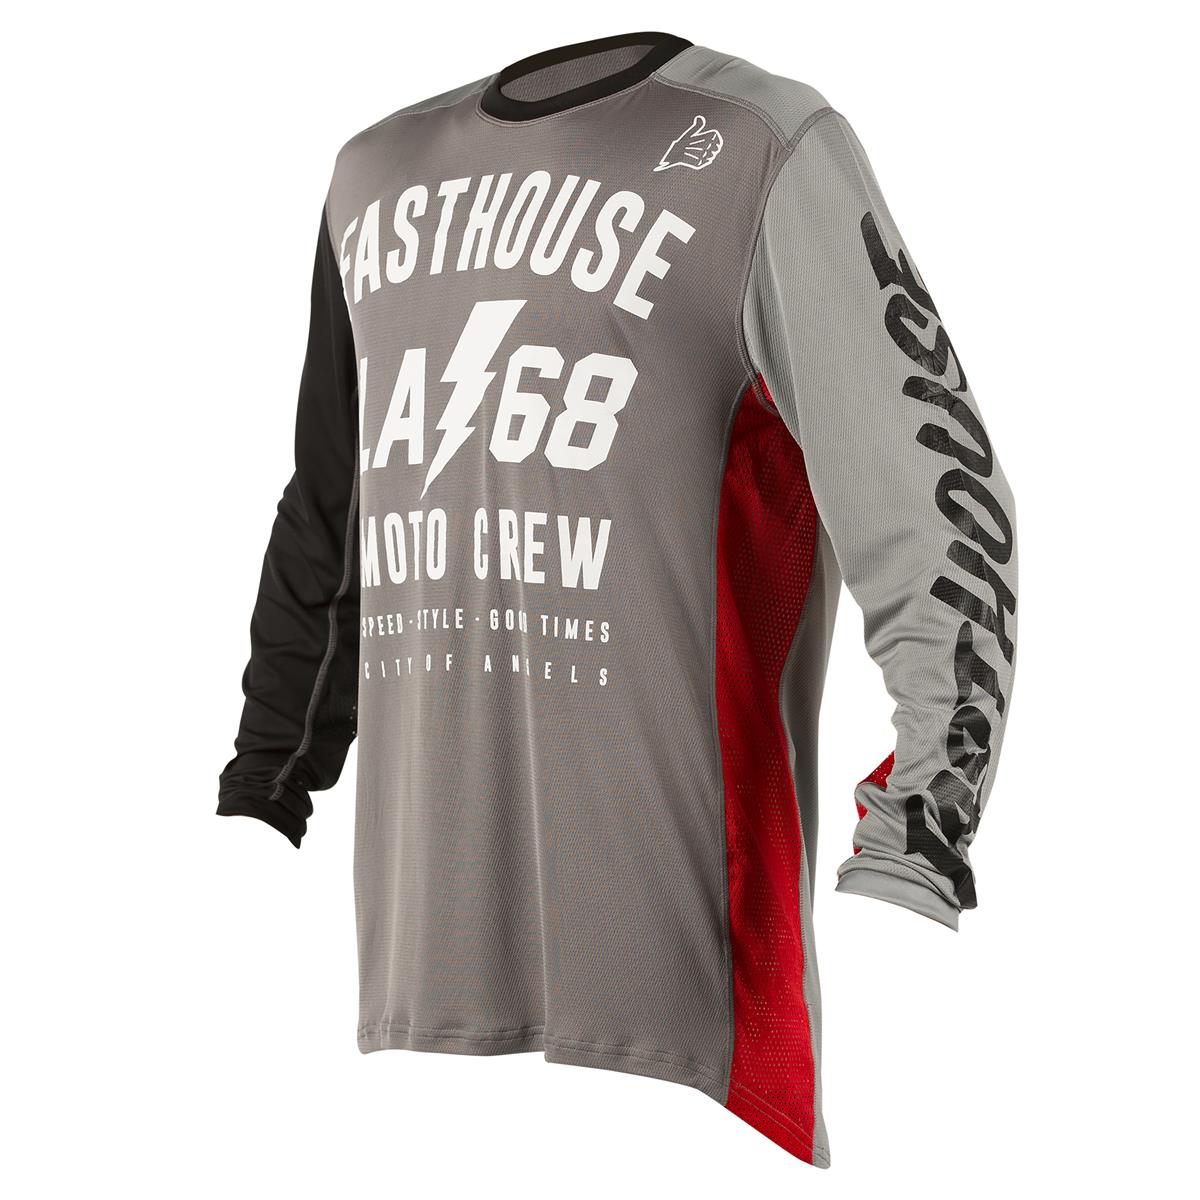 Fasthouse Jersey LA 68 Grey